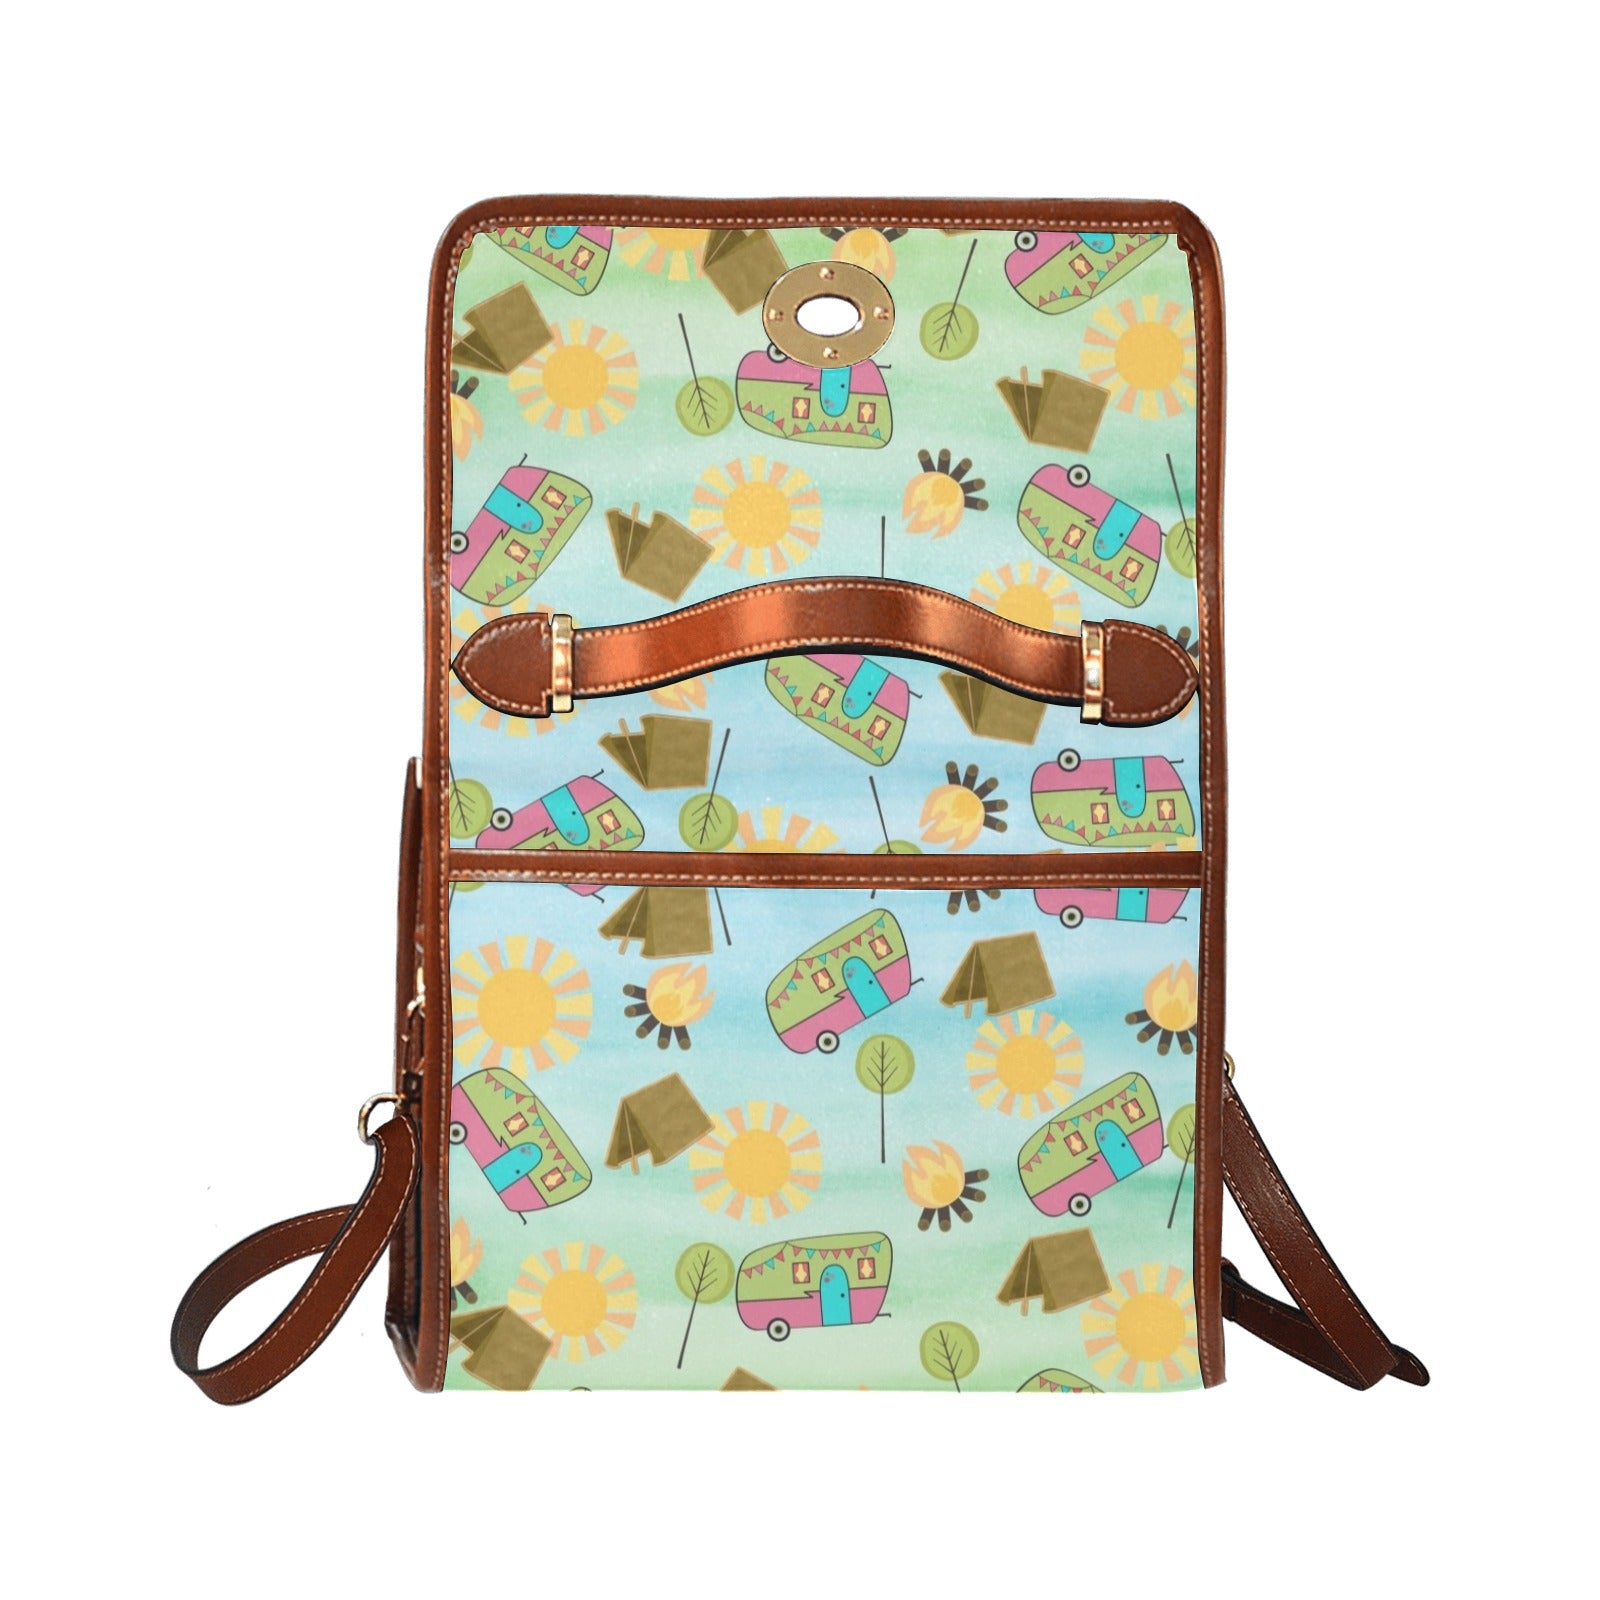 Happy Camper - Waterproof Canvas Handbag